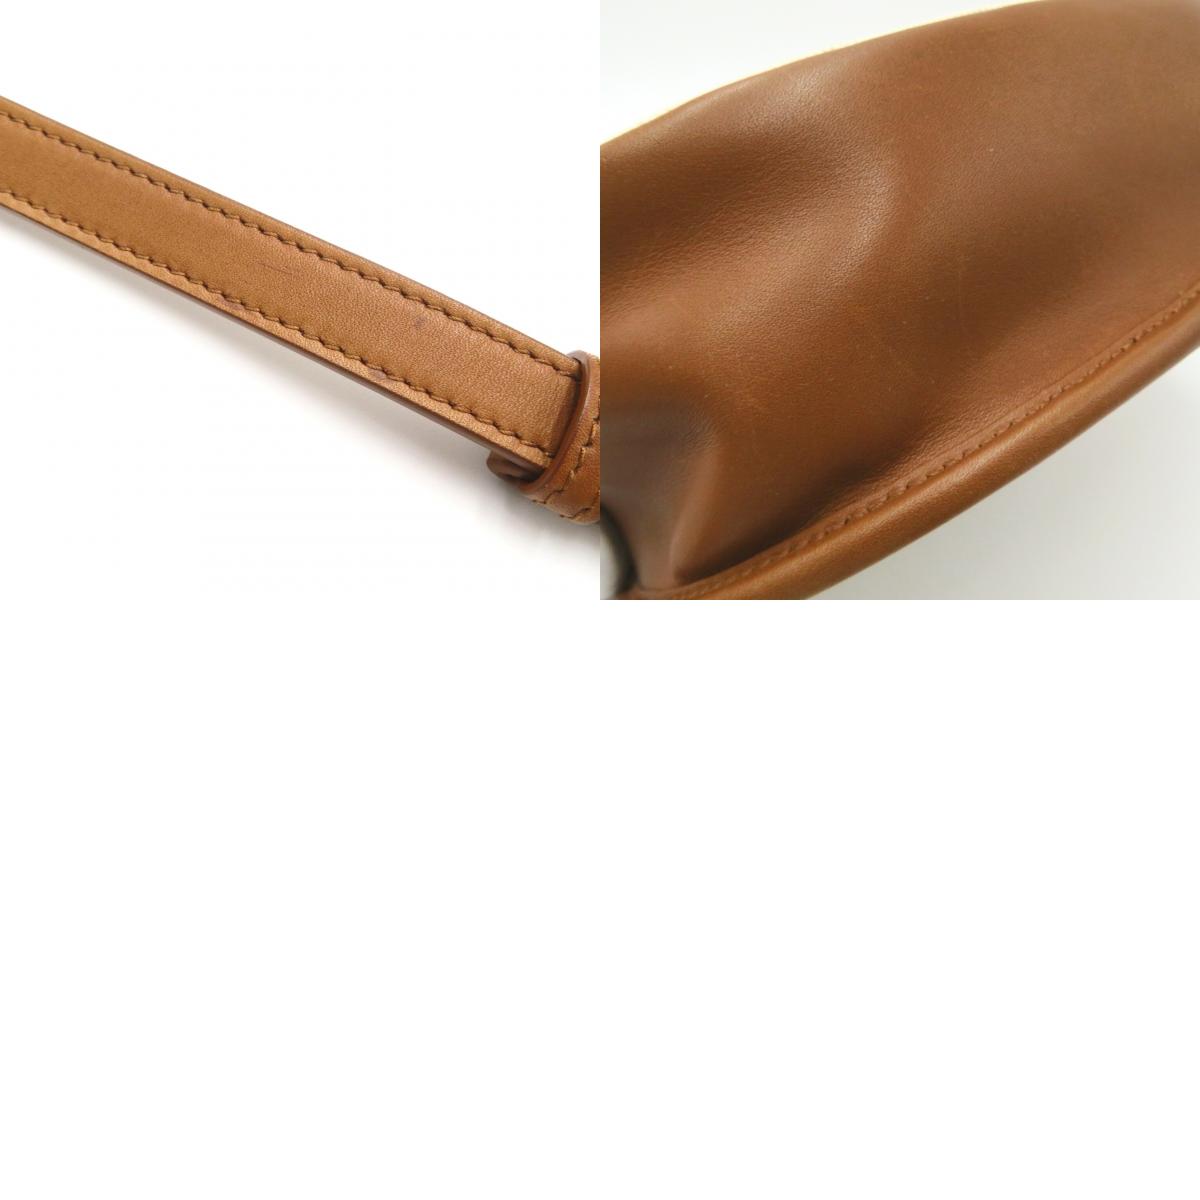 Saint Laurent Her Bag Holder Bag Cotton Leather  Beige/Brown/Natural/Brown